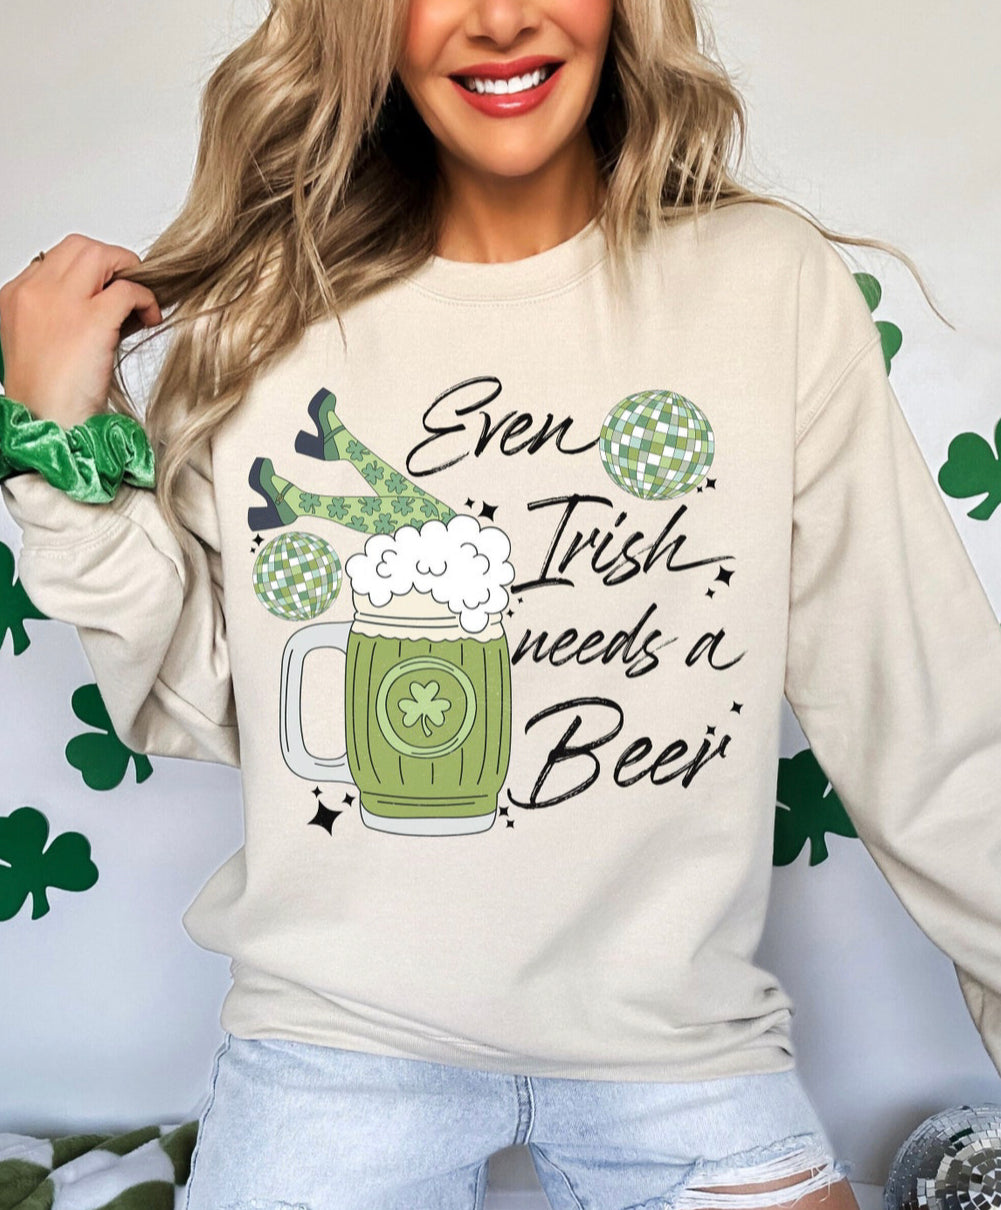 Even Irish need beer St. Patrick’s day shirt